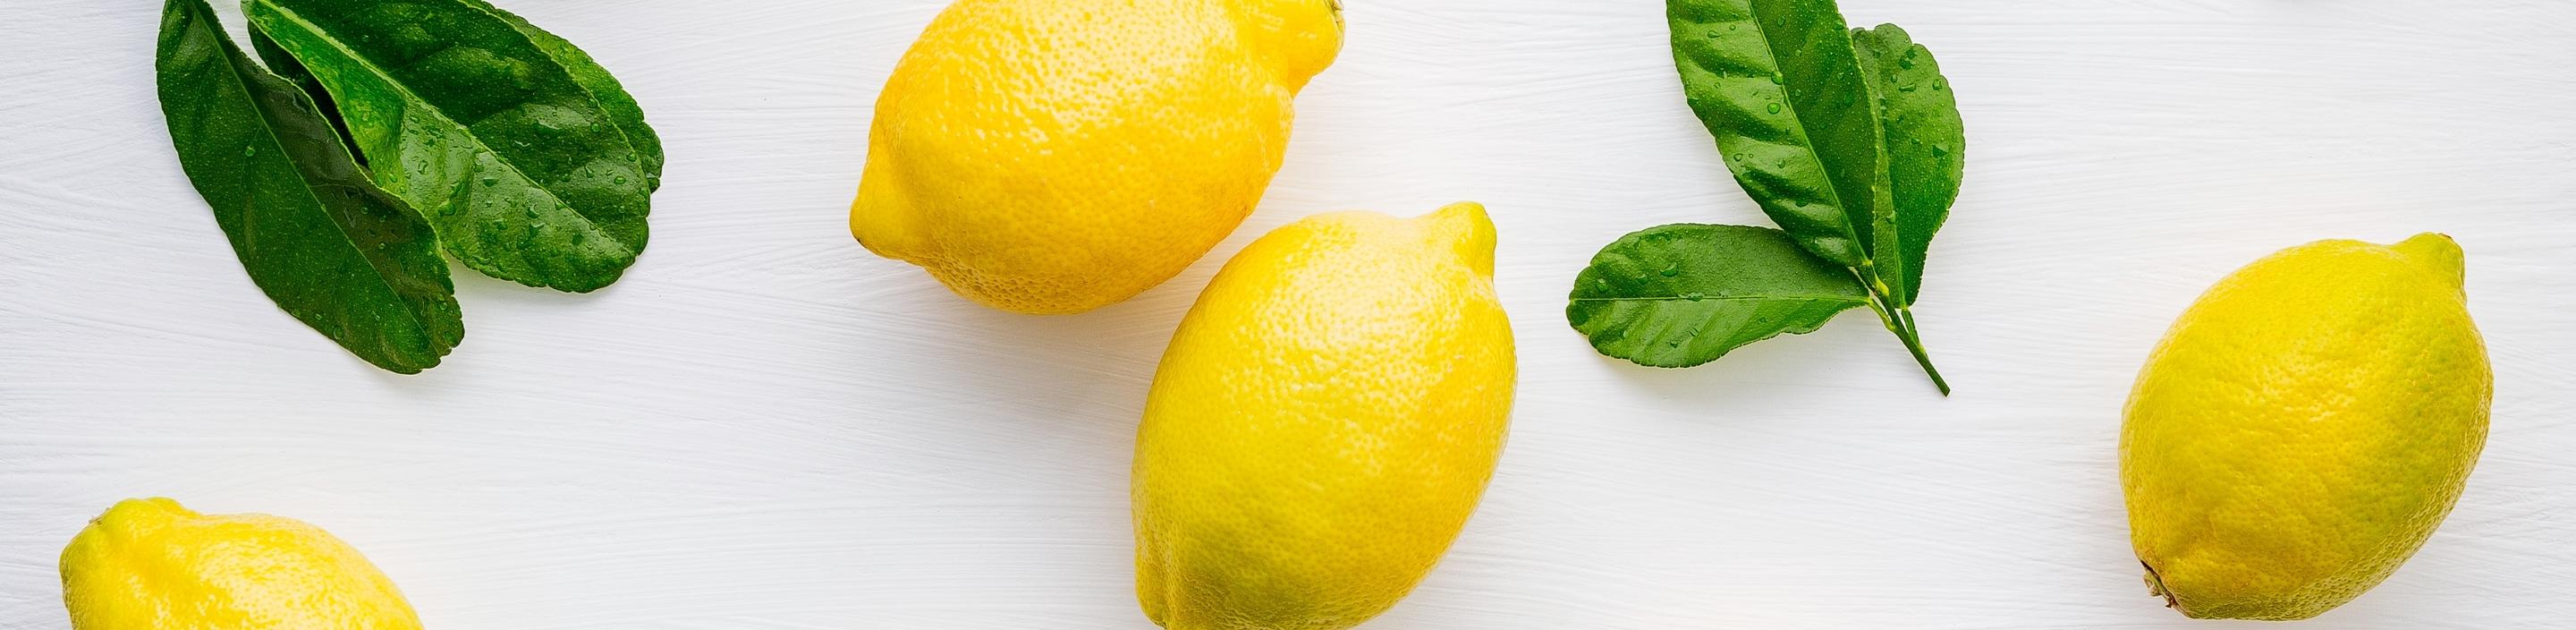 Lemon and Citrus Fruits